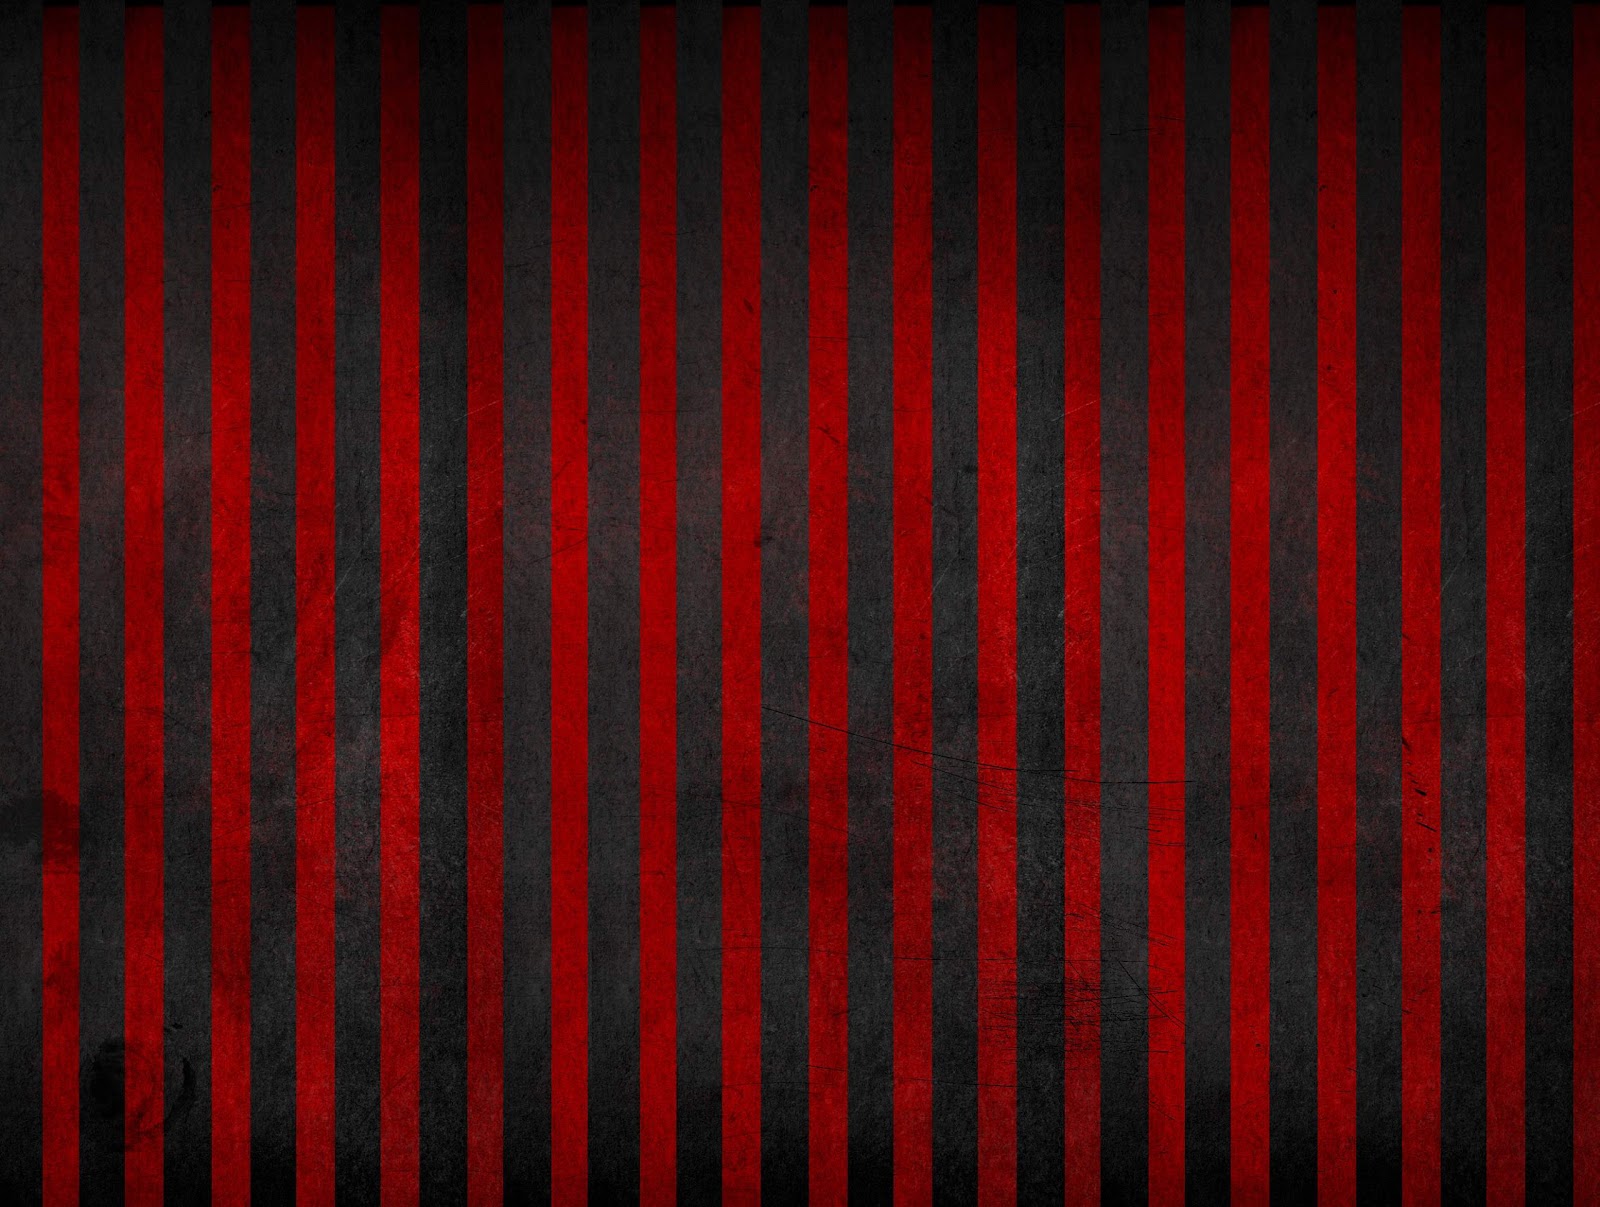 http://4.bp.blogspot.com/-0ppocatxe3s/UH3ADvNBk3I/AAAAAAAAAxM/2JK5igsLcSY/s1600/black_and_red-vertical-stripes-hd-desktop-background-wallpaper.jpg